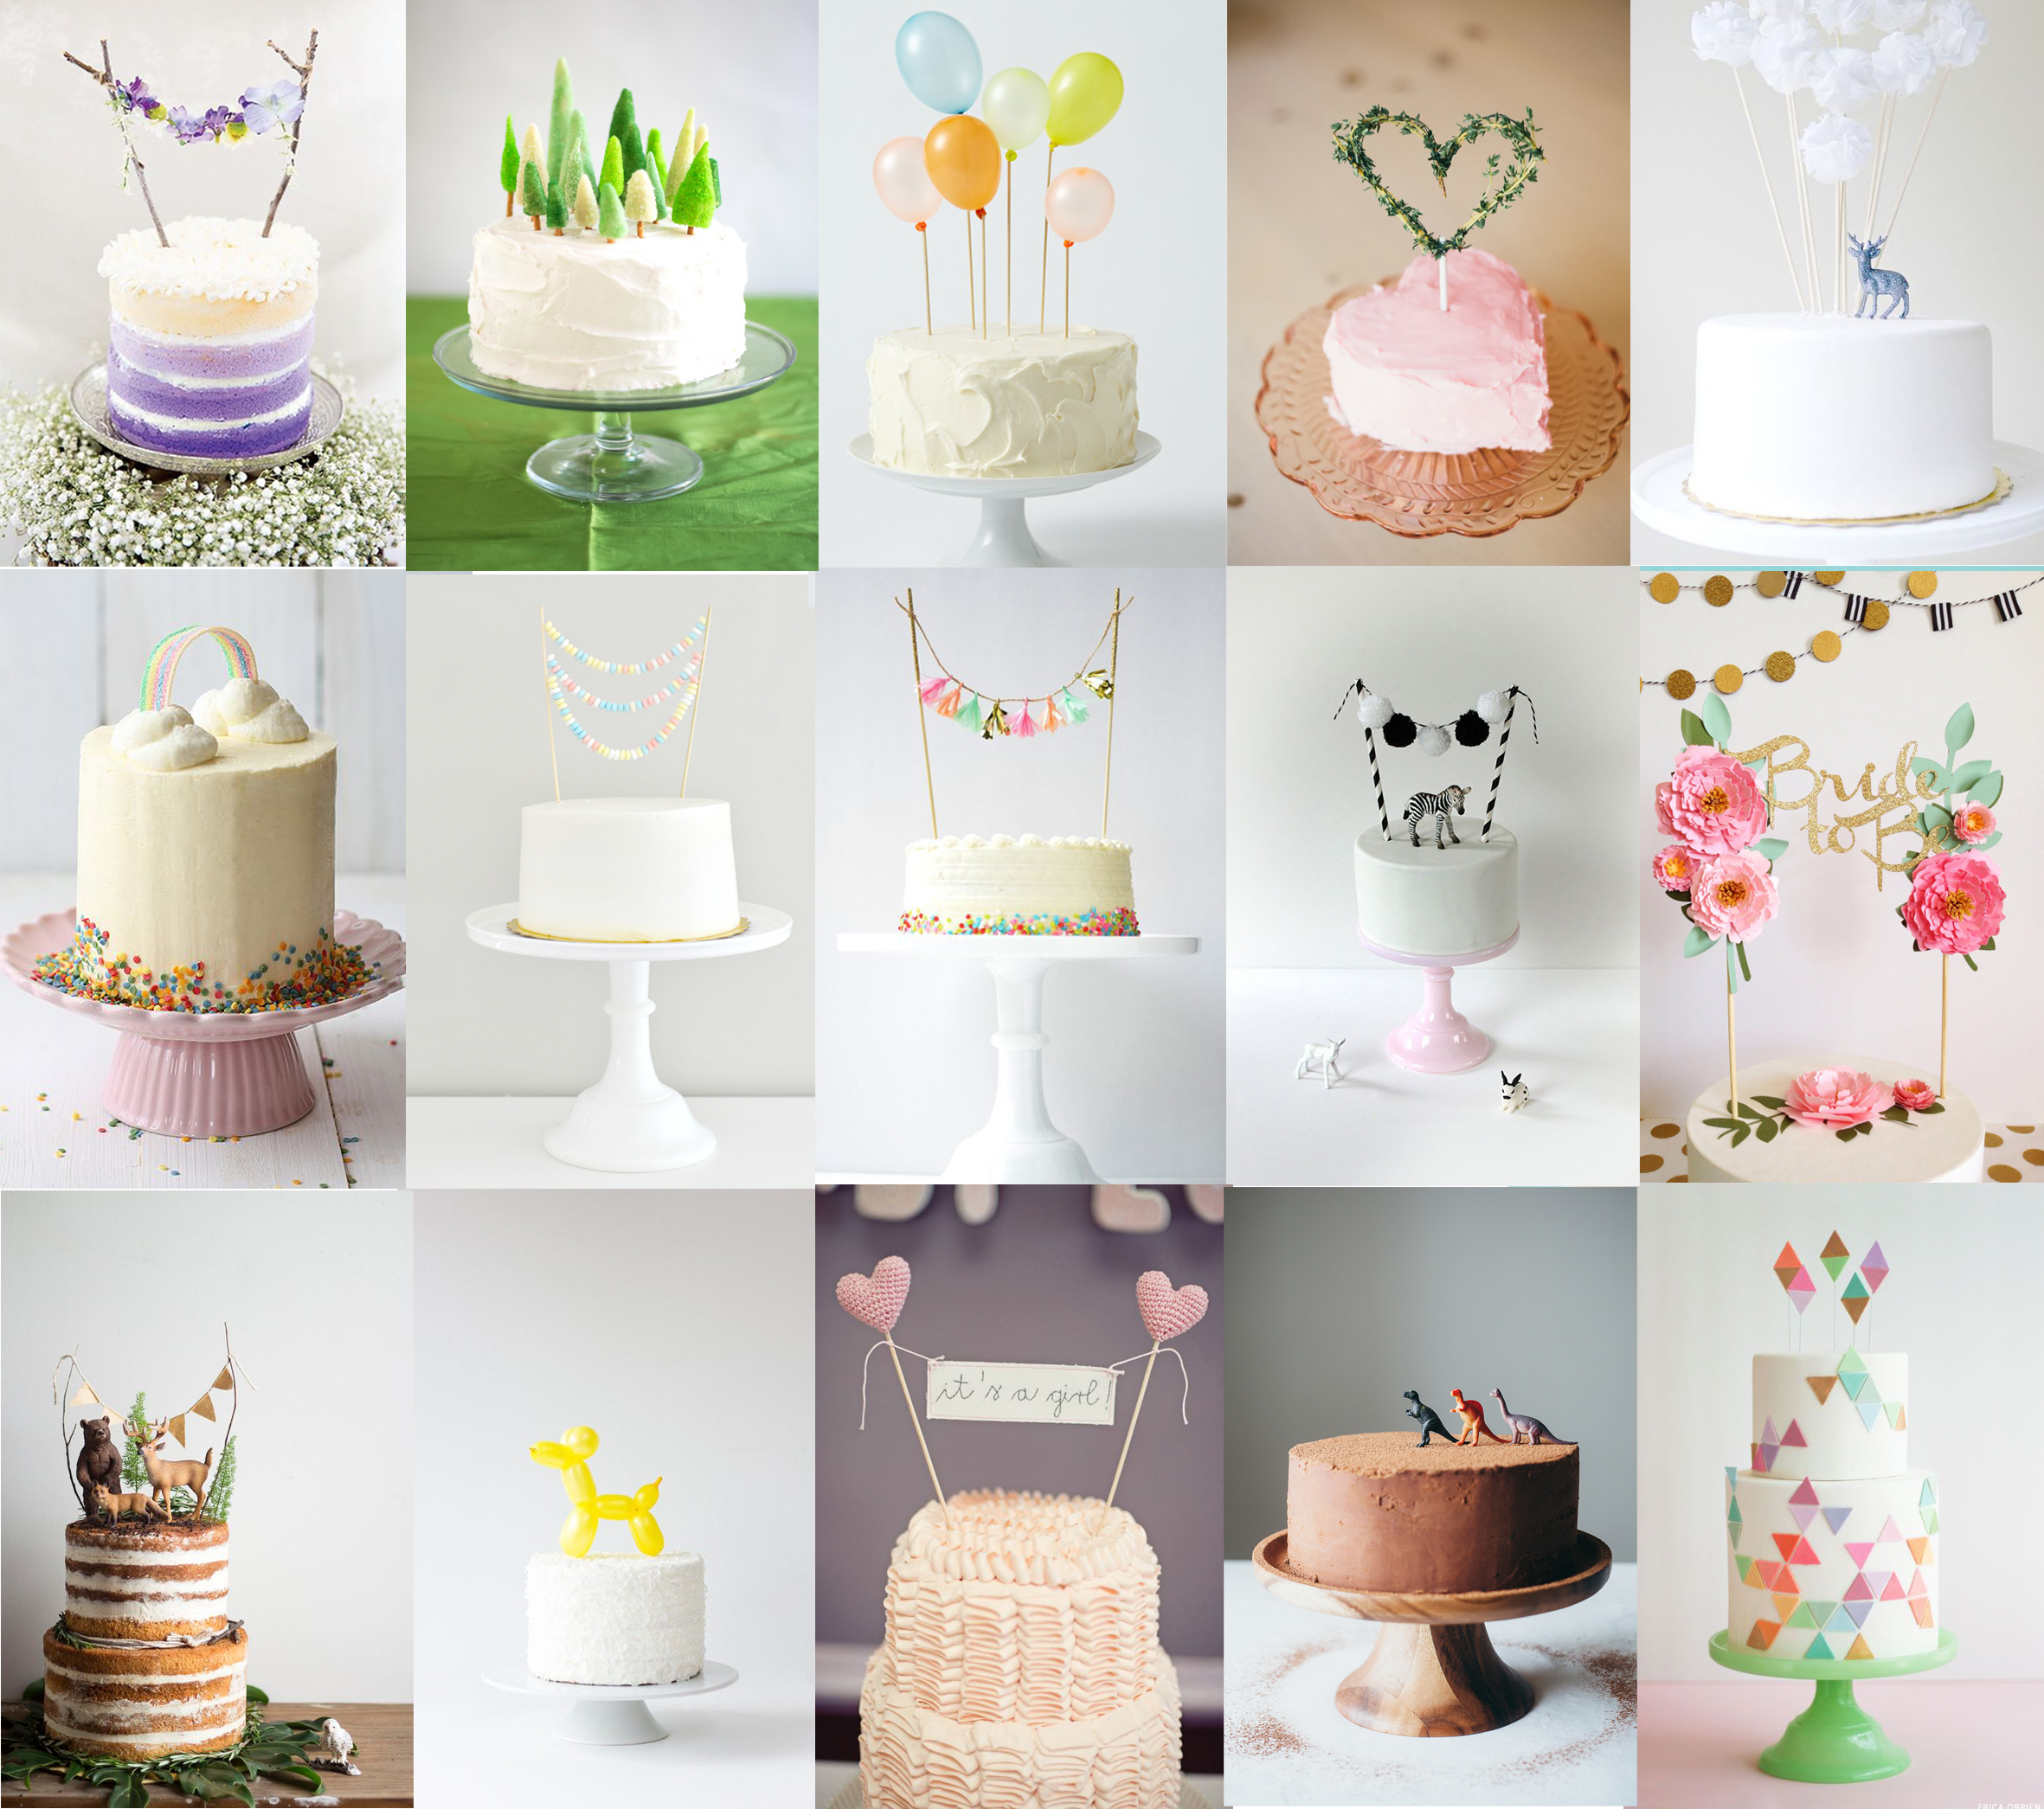 Tout pour pâtisserie & Cake design > Topper à gâteau > Topper